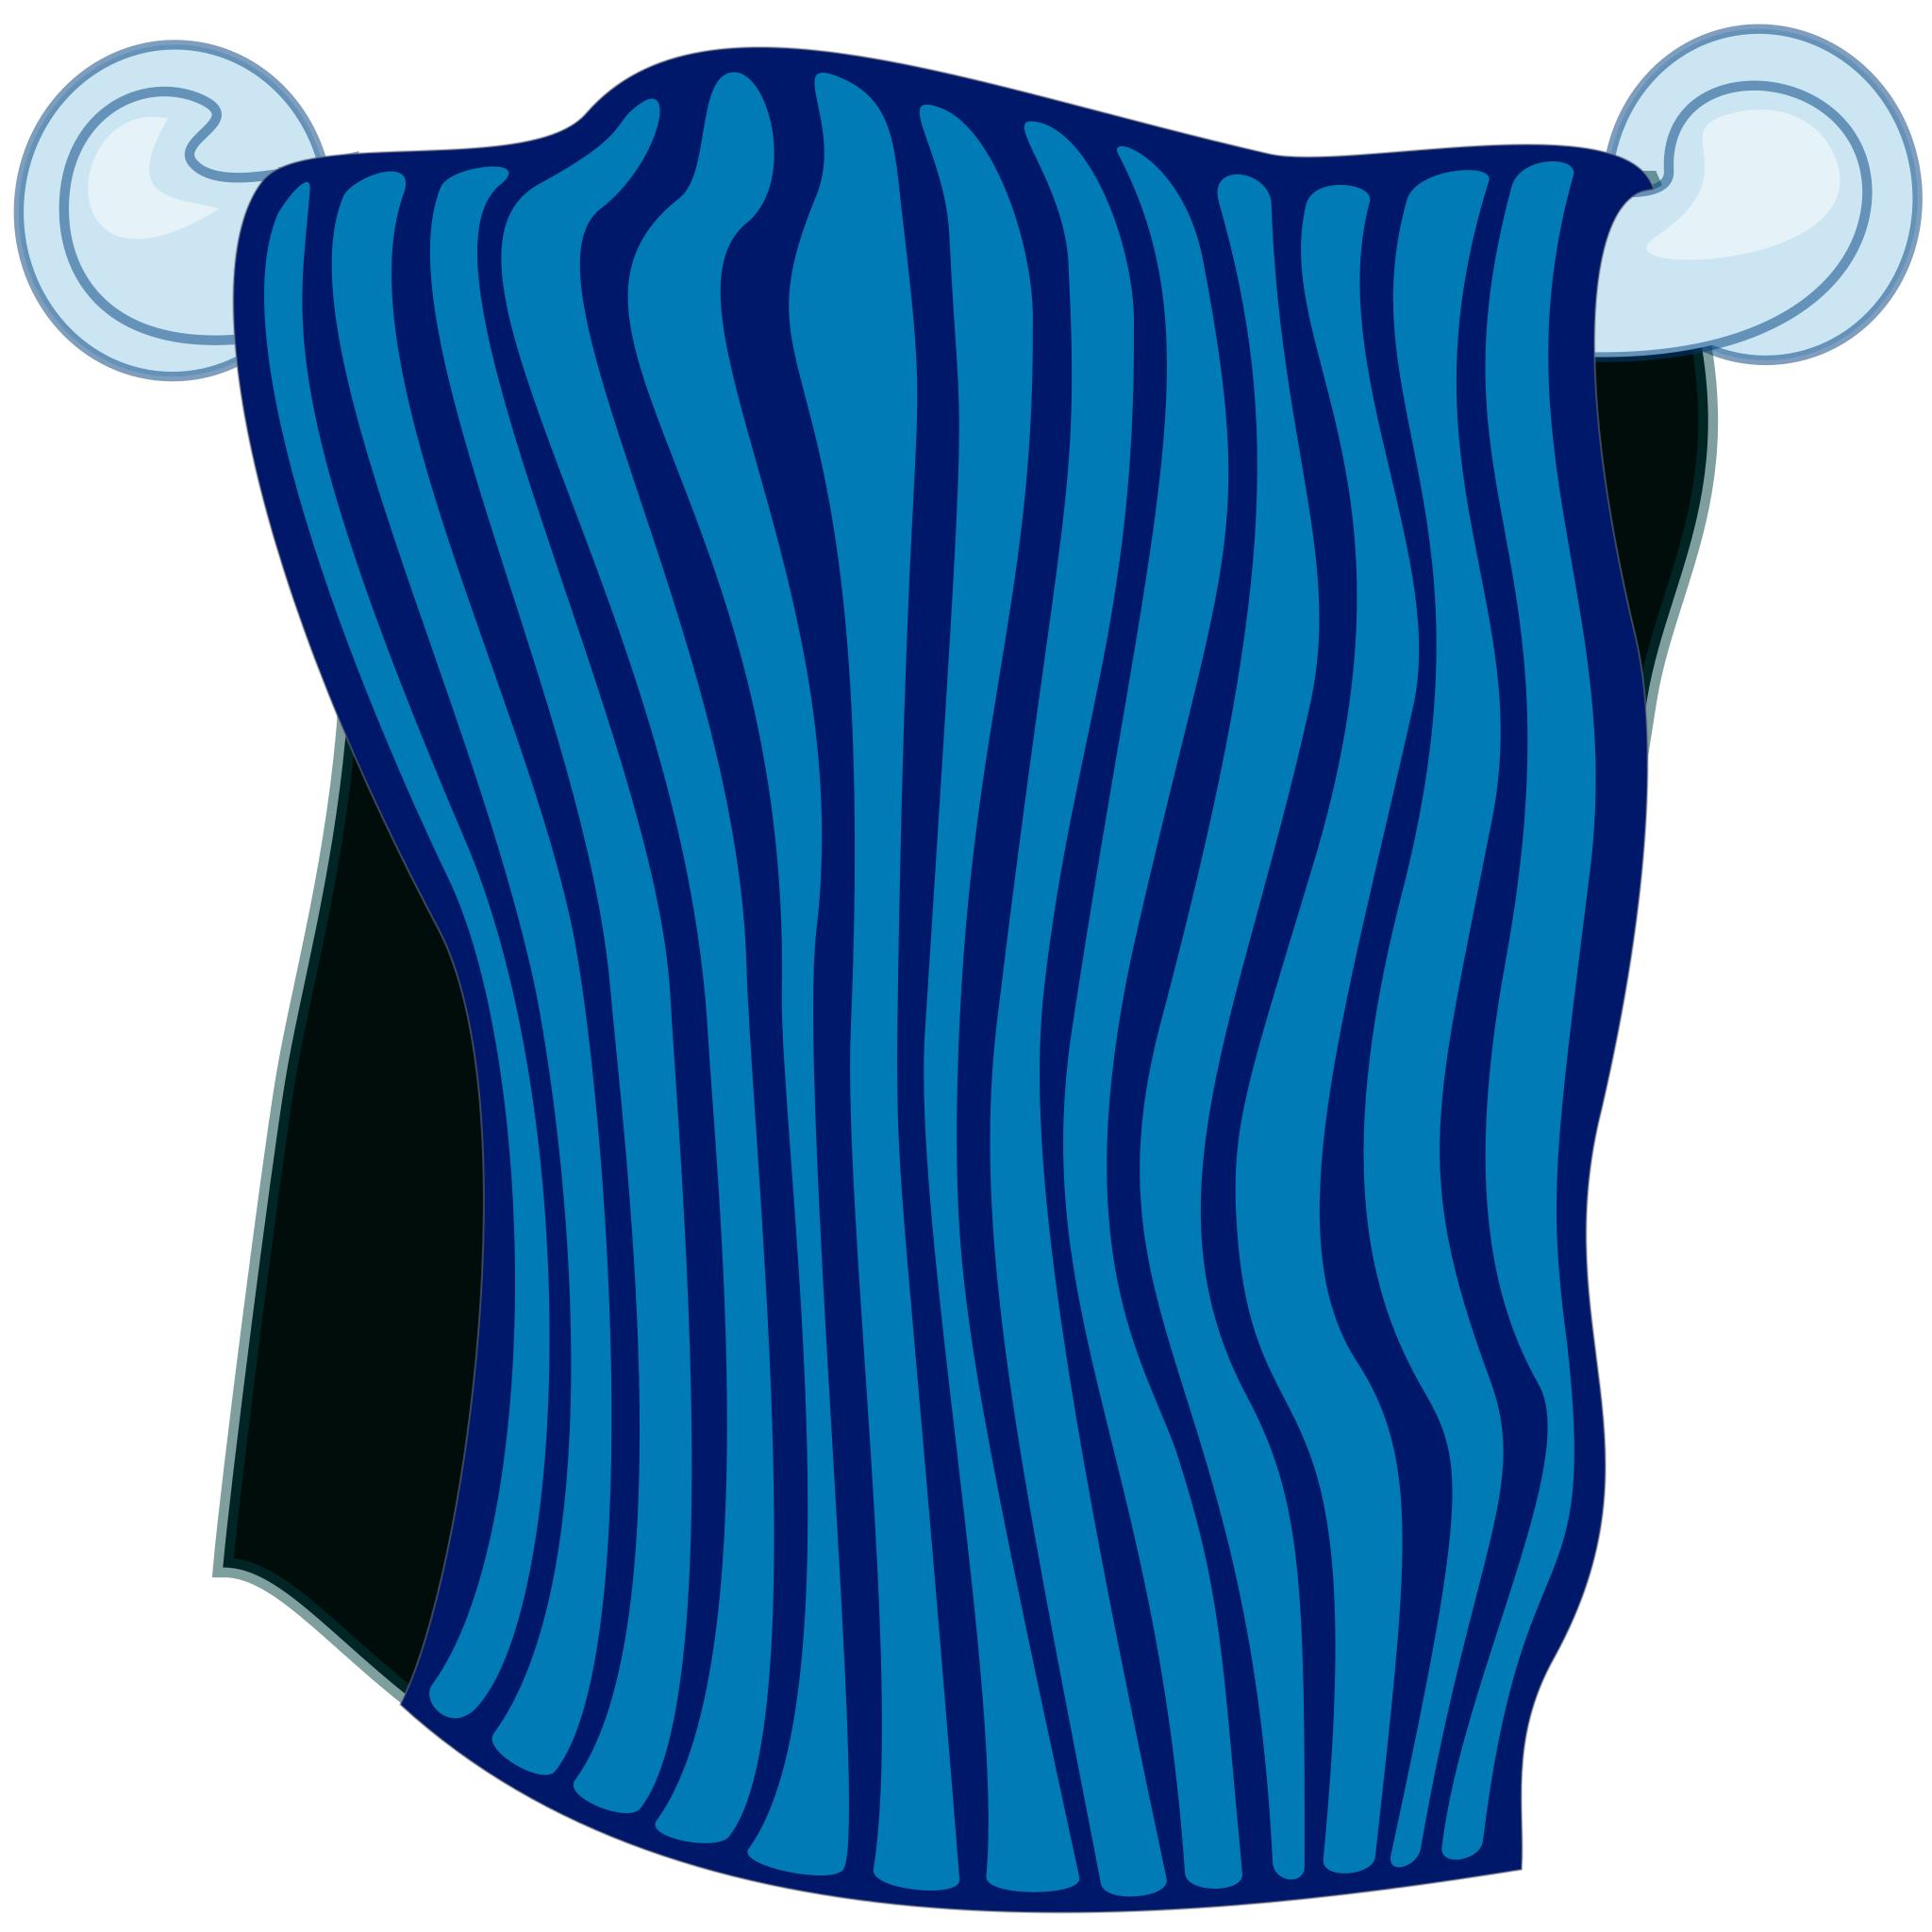 Клипарт полотенце на прозрачном фоне